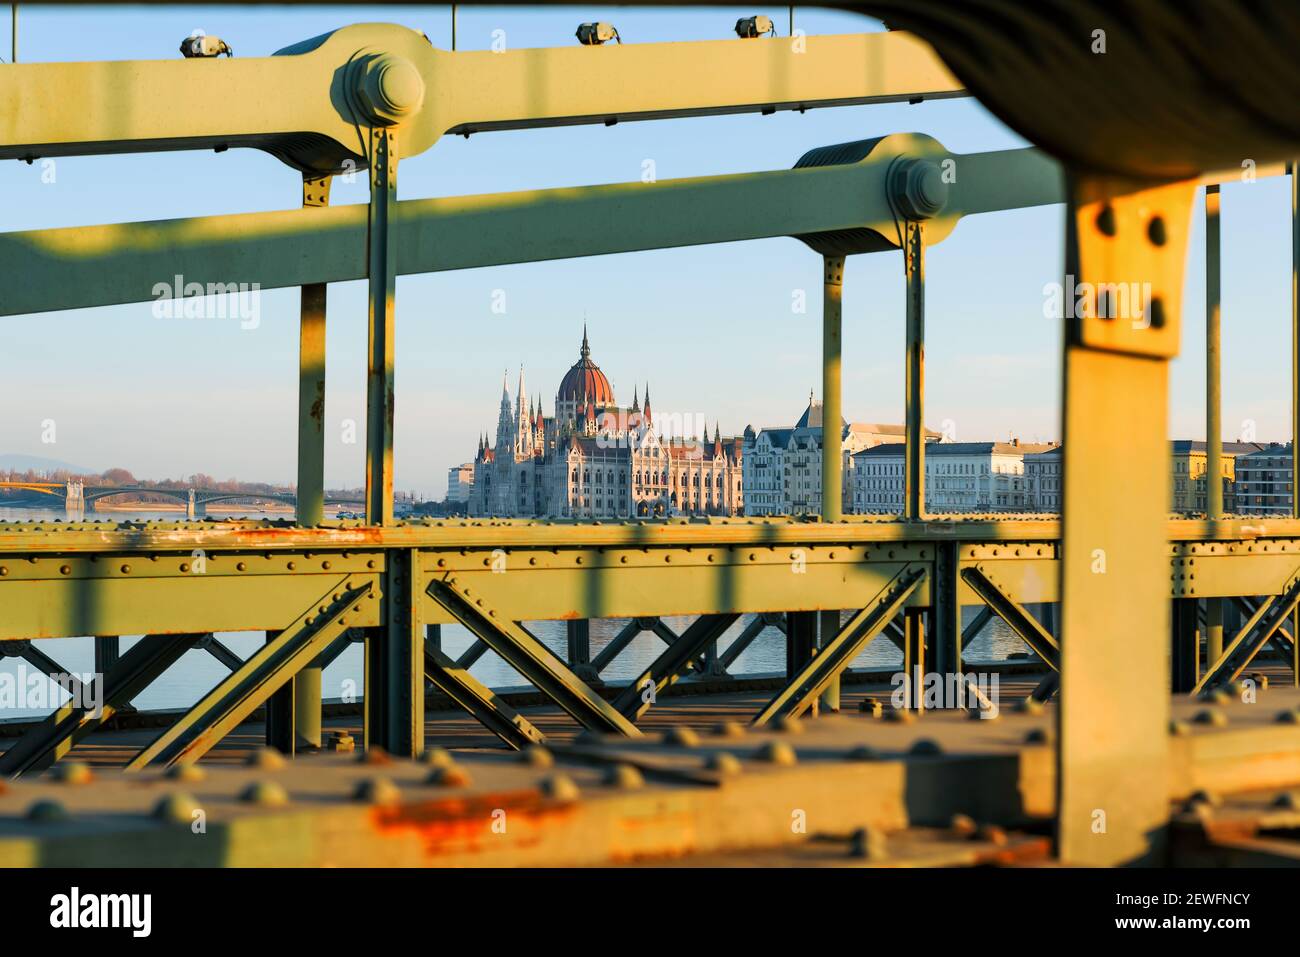 Le pont de la chaîne avant les travaux de rénovation commence. Le plus vieux pont de Hongrie qui célèbre attraction touristique rouillé, mauvais état mais me renouvelant Banque D'Images